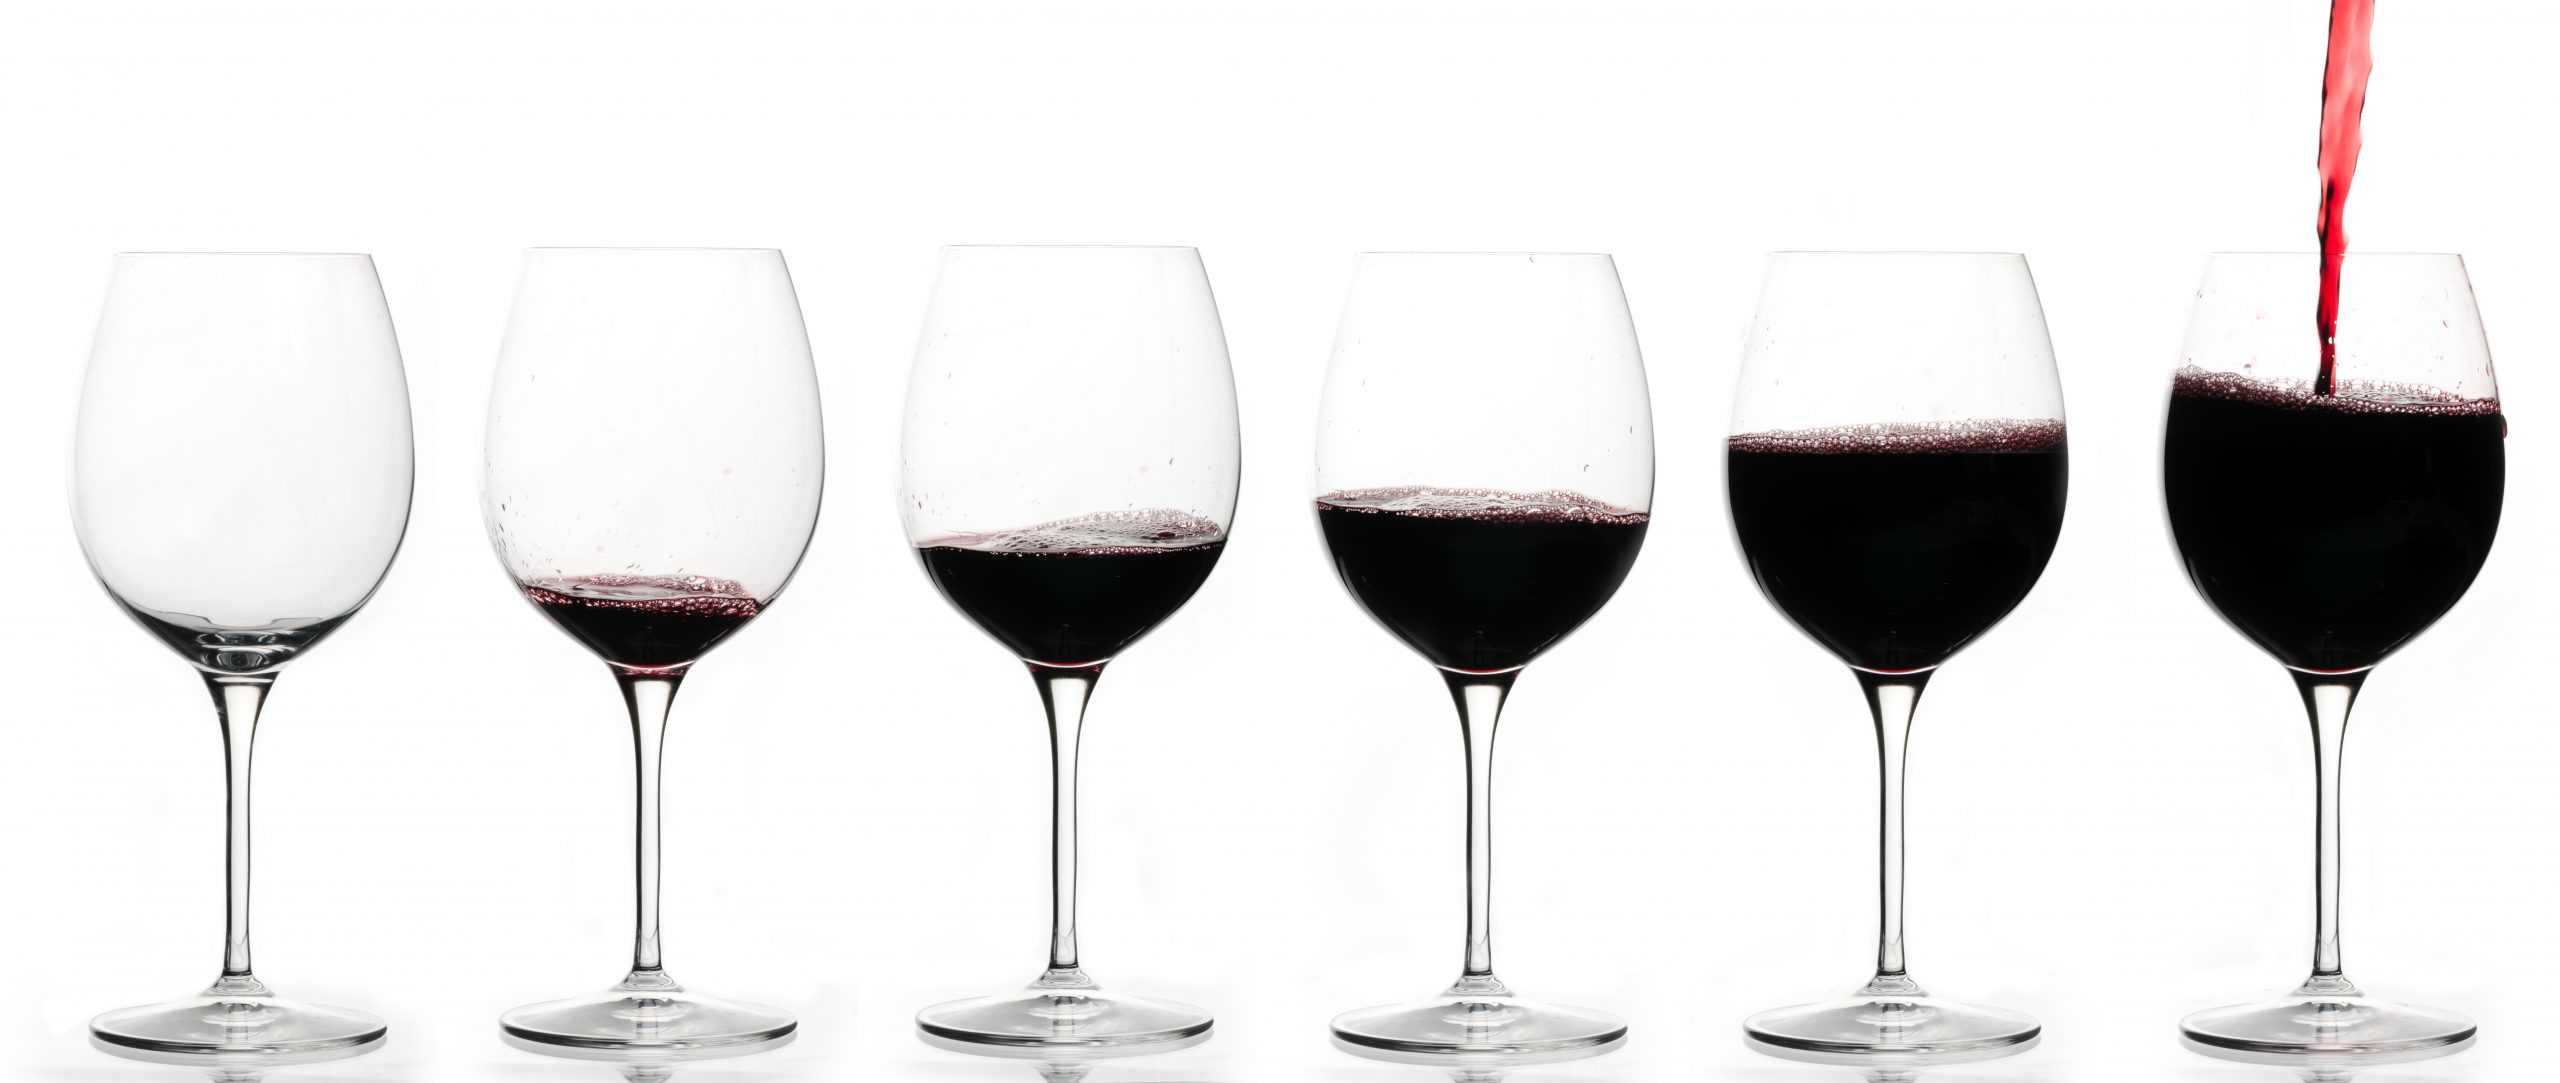 Диоксид серы в вине: зачем добавляют консервант e220, его влияние на здоровье, польза и вред, список марок вин без антиокислителя